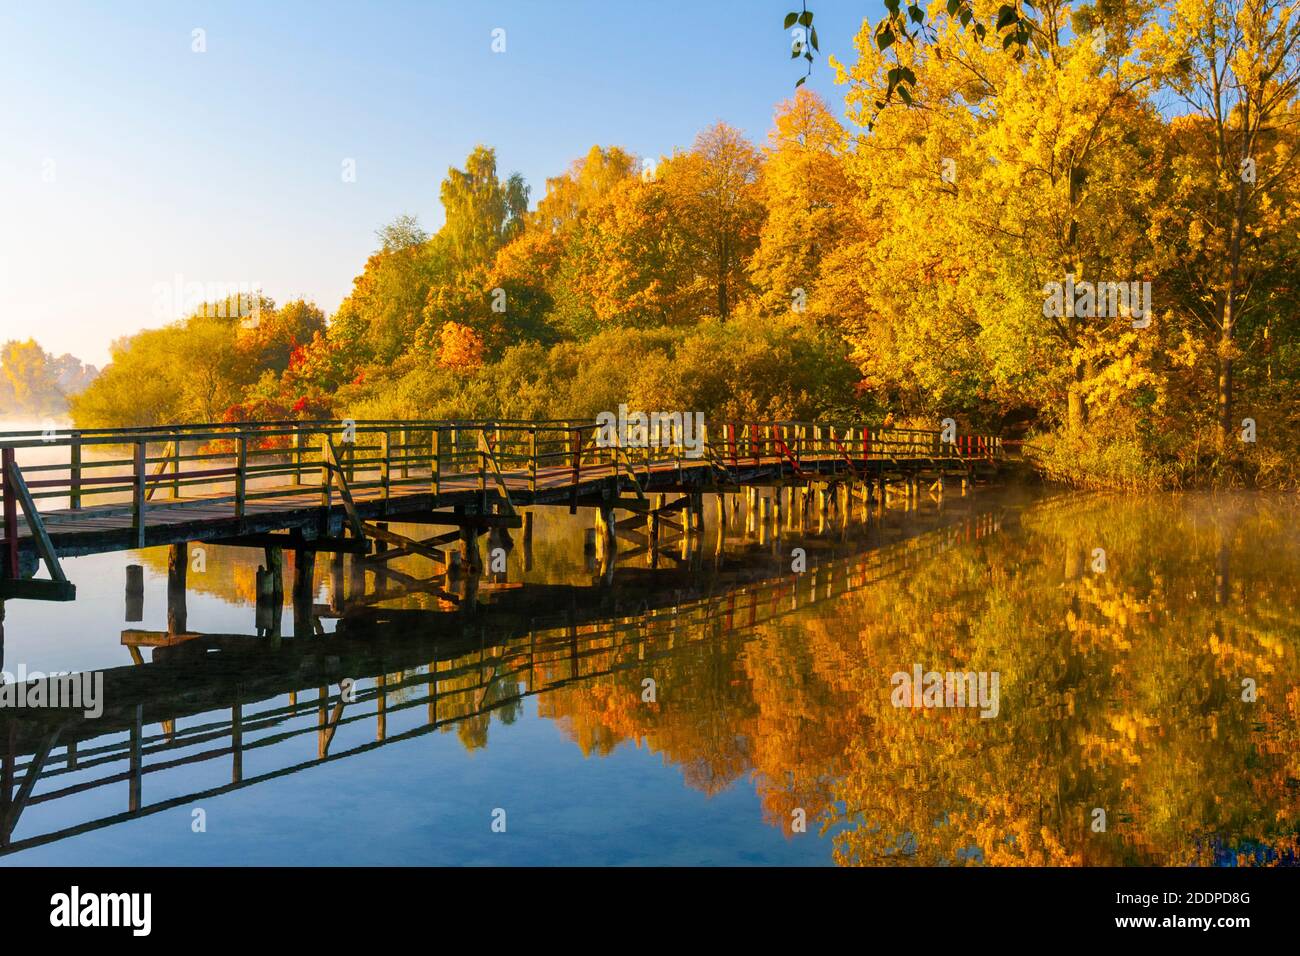 Olsztyn, a wooden footbridge on Lake Dlugi, Poland Stock Photo